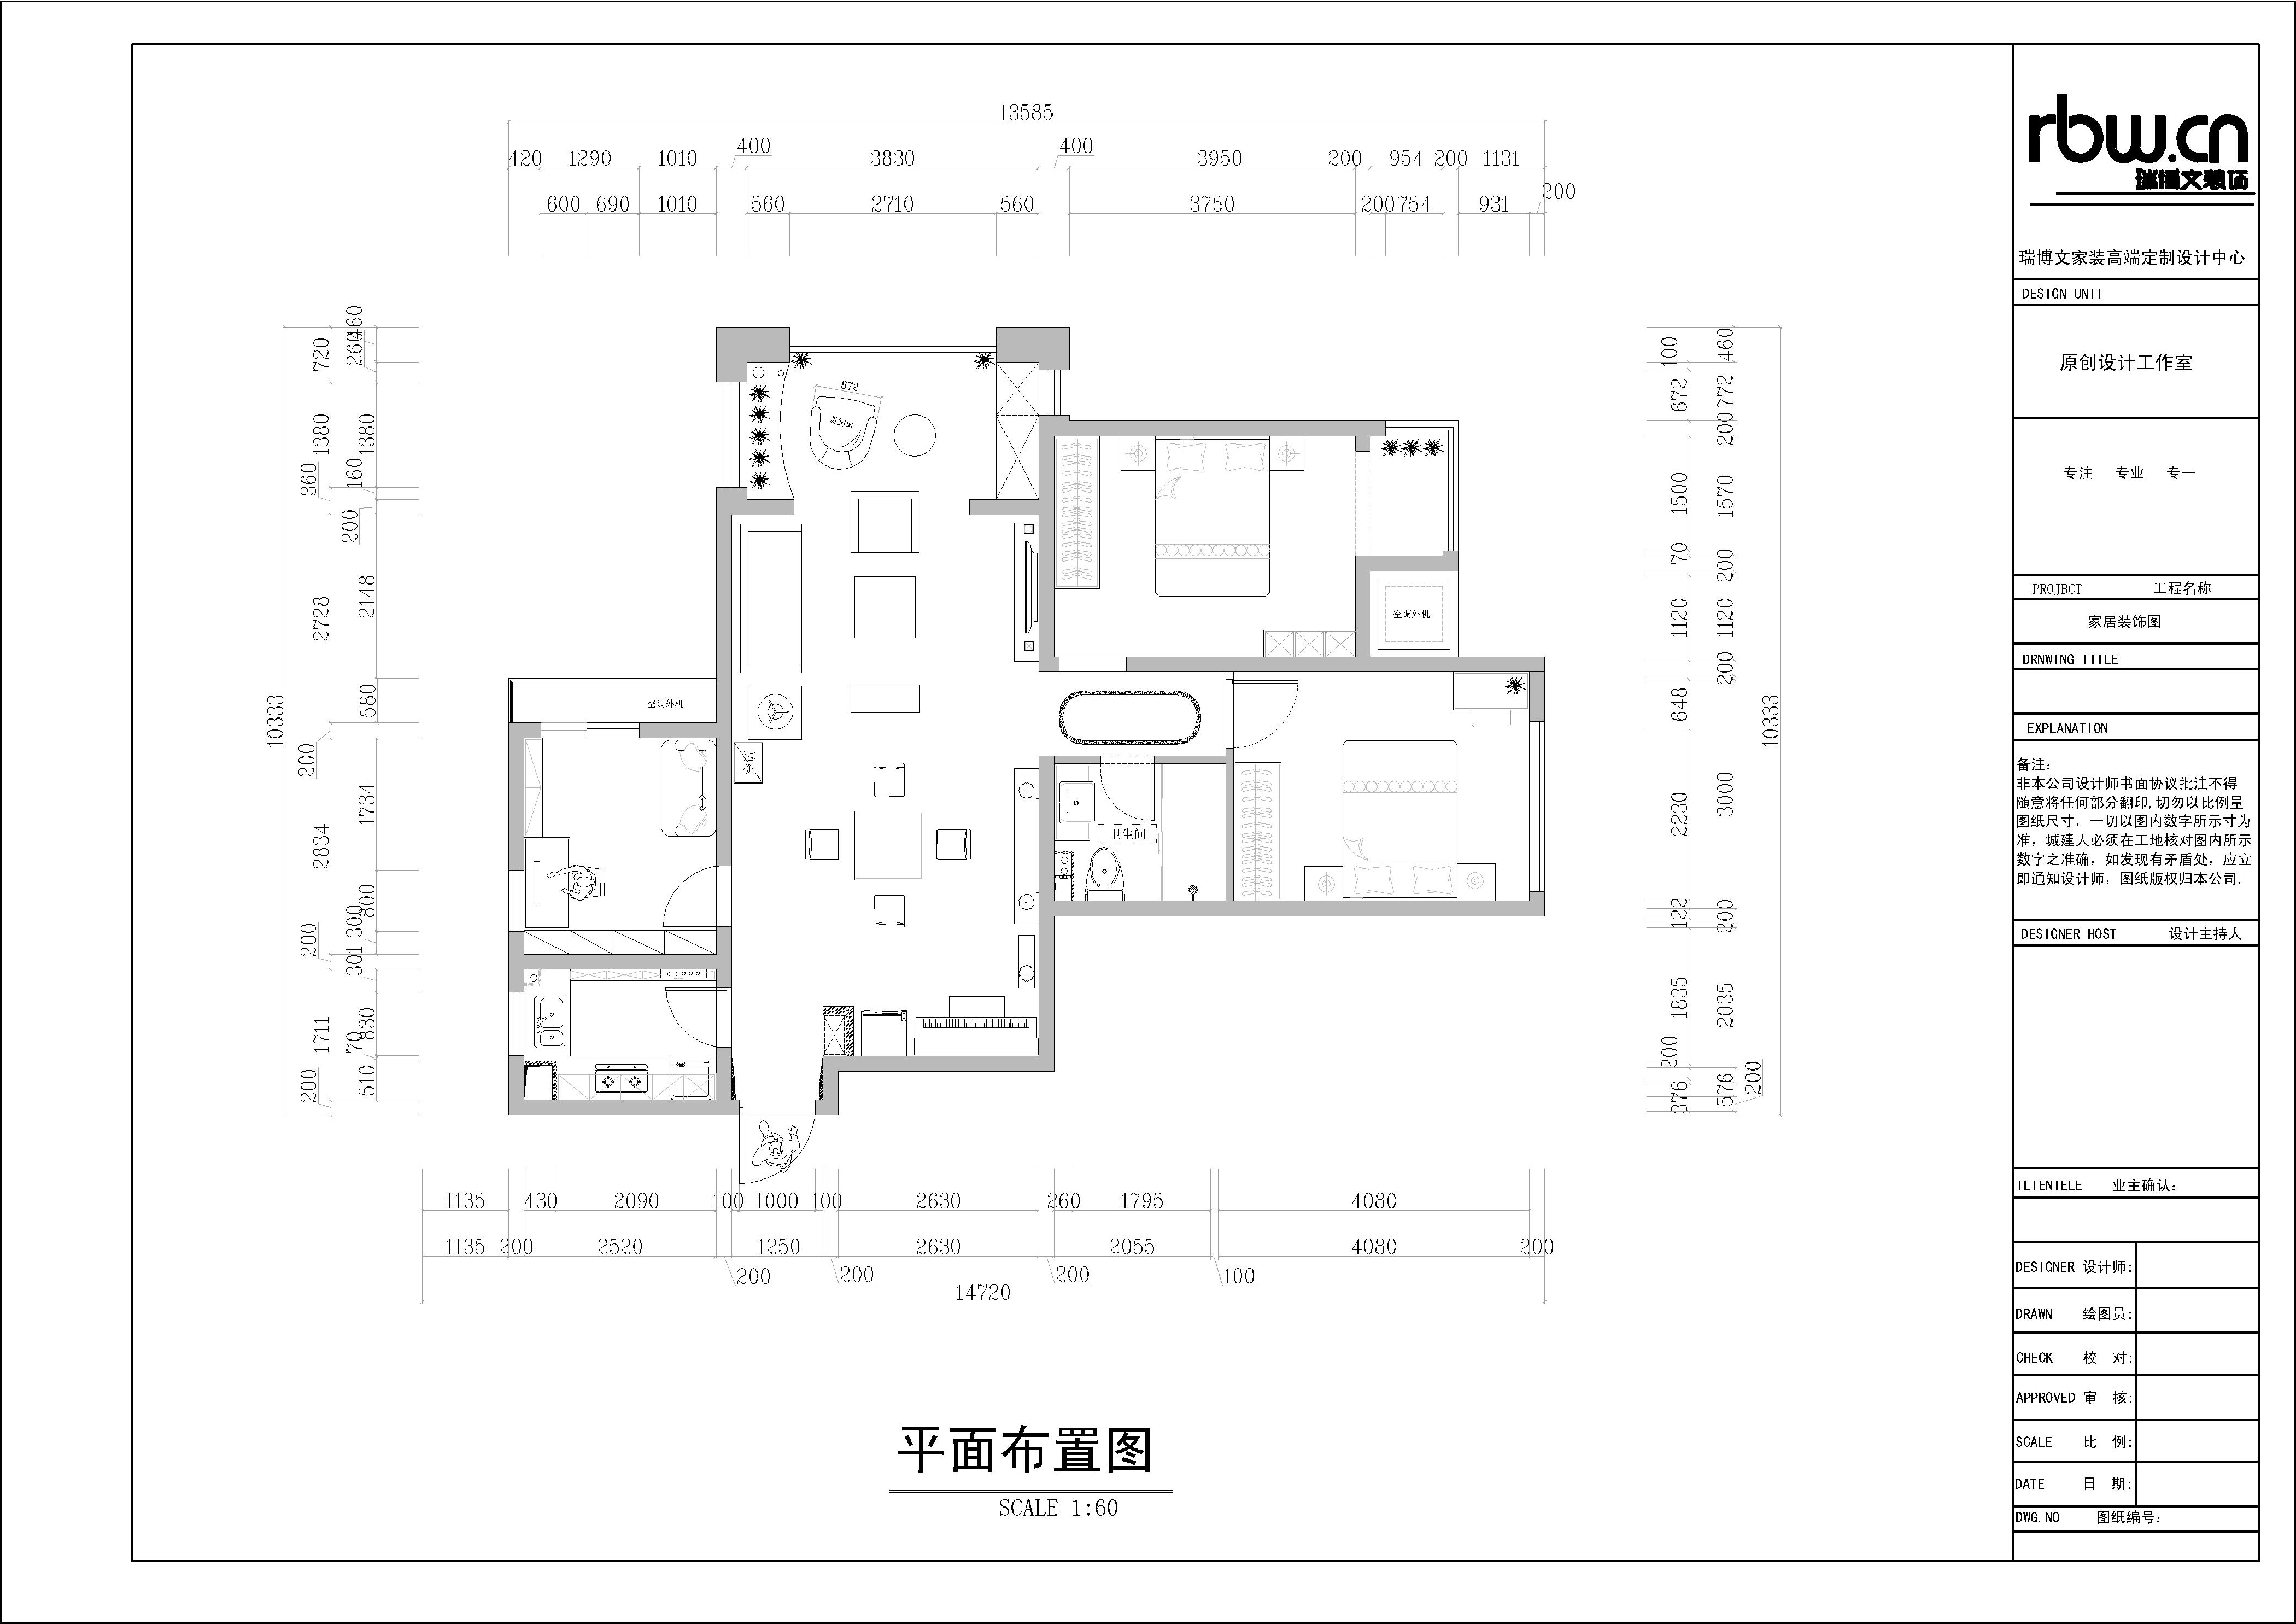 混搭 三居室 家庭装修 装修效果图 平面布置图 户型图图片来自北京汉东装饰设计在K2清水湾  混搭  温馨之家的分享